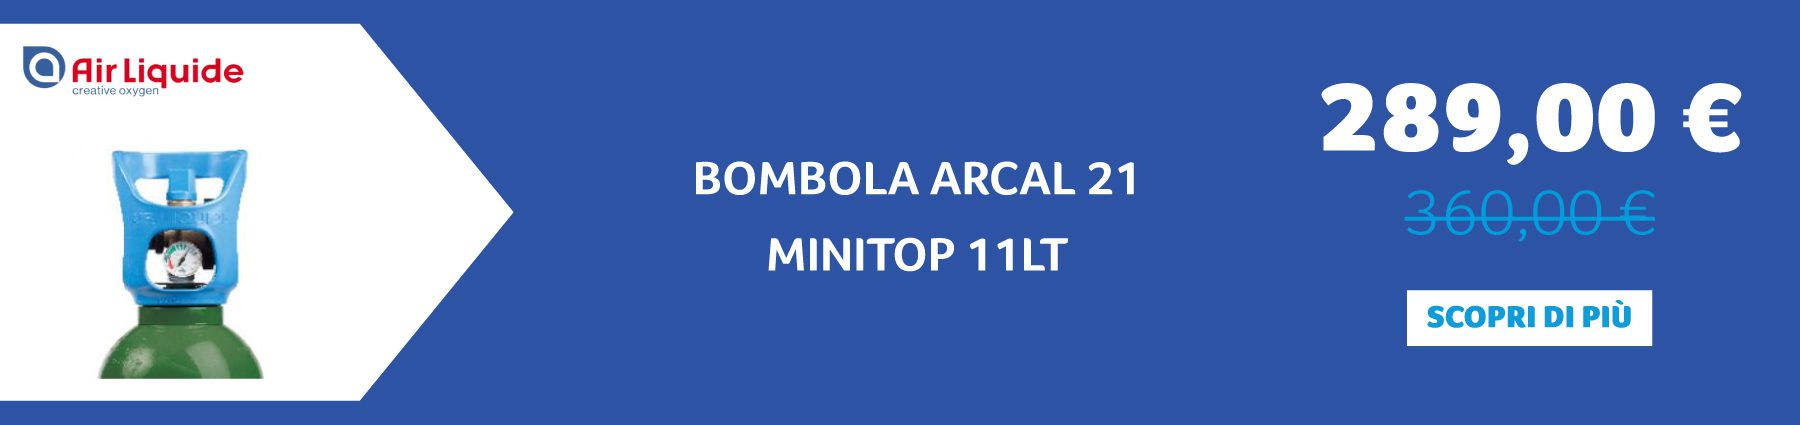 Air Liquide - BOMBOLA ARCAL 21 MINITOP 11LT    289,00 € anziché 360,00 €